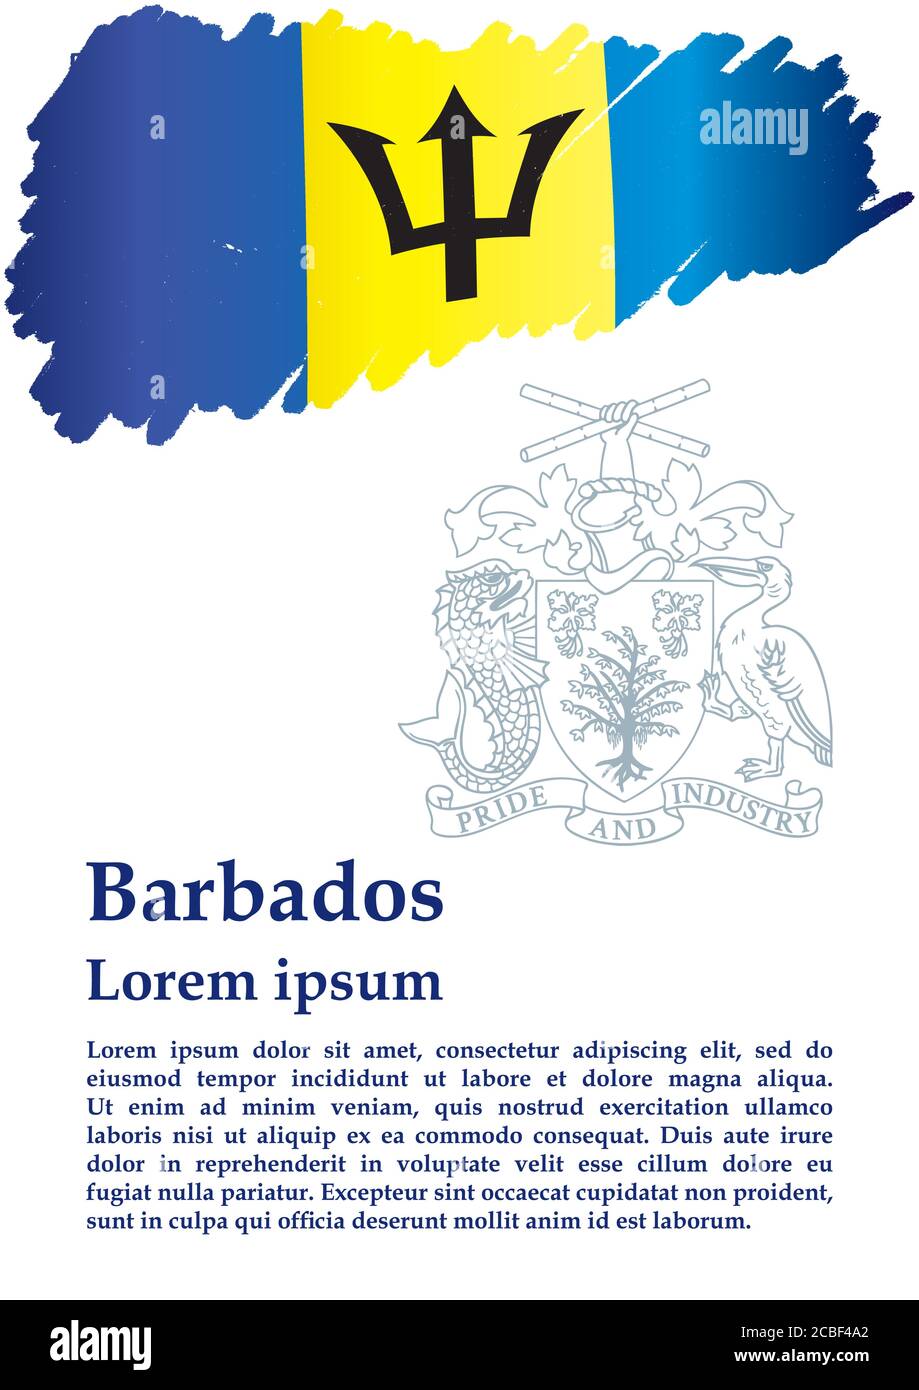 Bandera de Barbados, Barbados. Plantilla para el diseño de premios, un documento oficial con la bandera de Barbados. Ilustración vectorial brillante y colorida. Ilustración del Vector